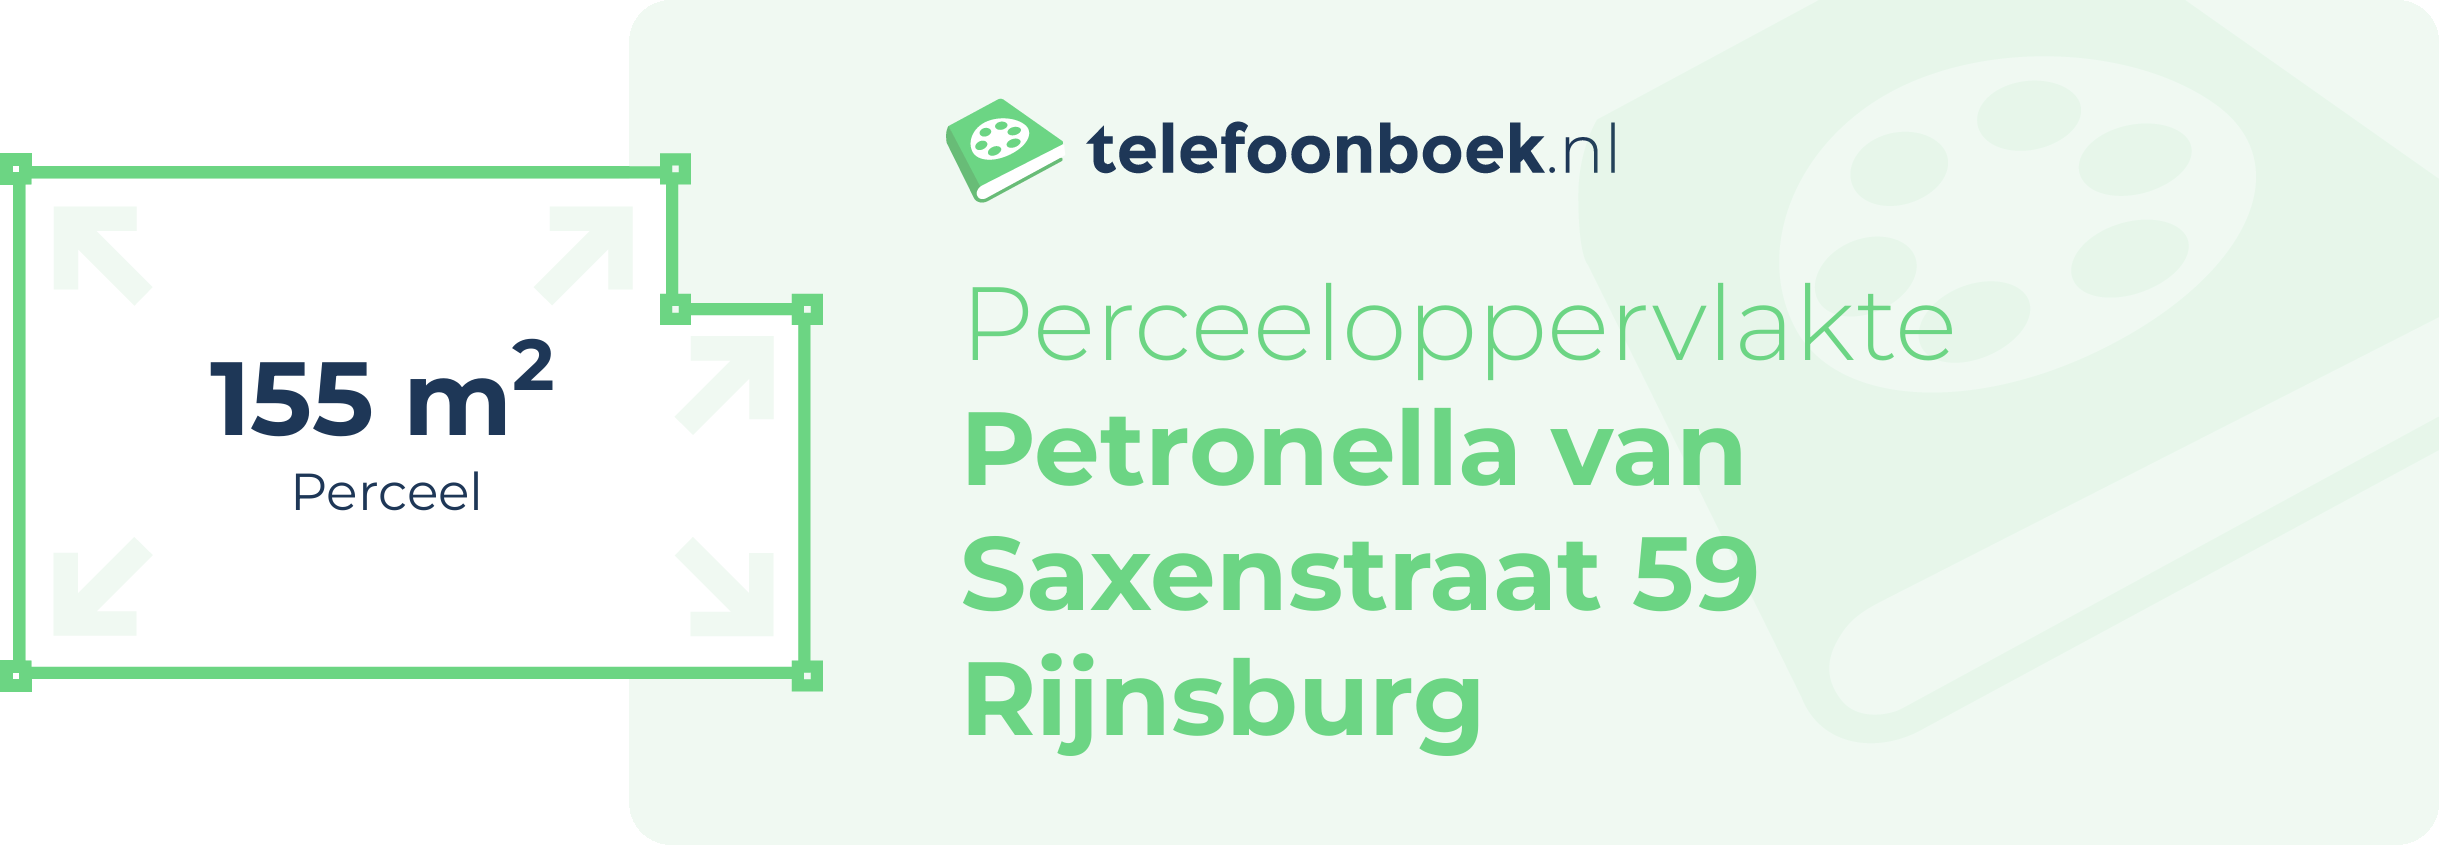 Perceeloppervlakte Petronella Van Saxenstraat 59 Rijnsburg